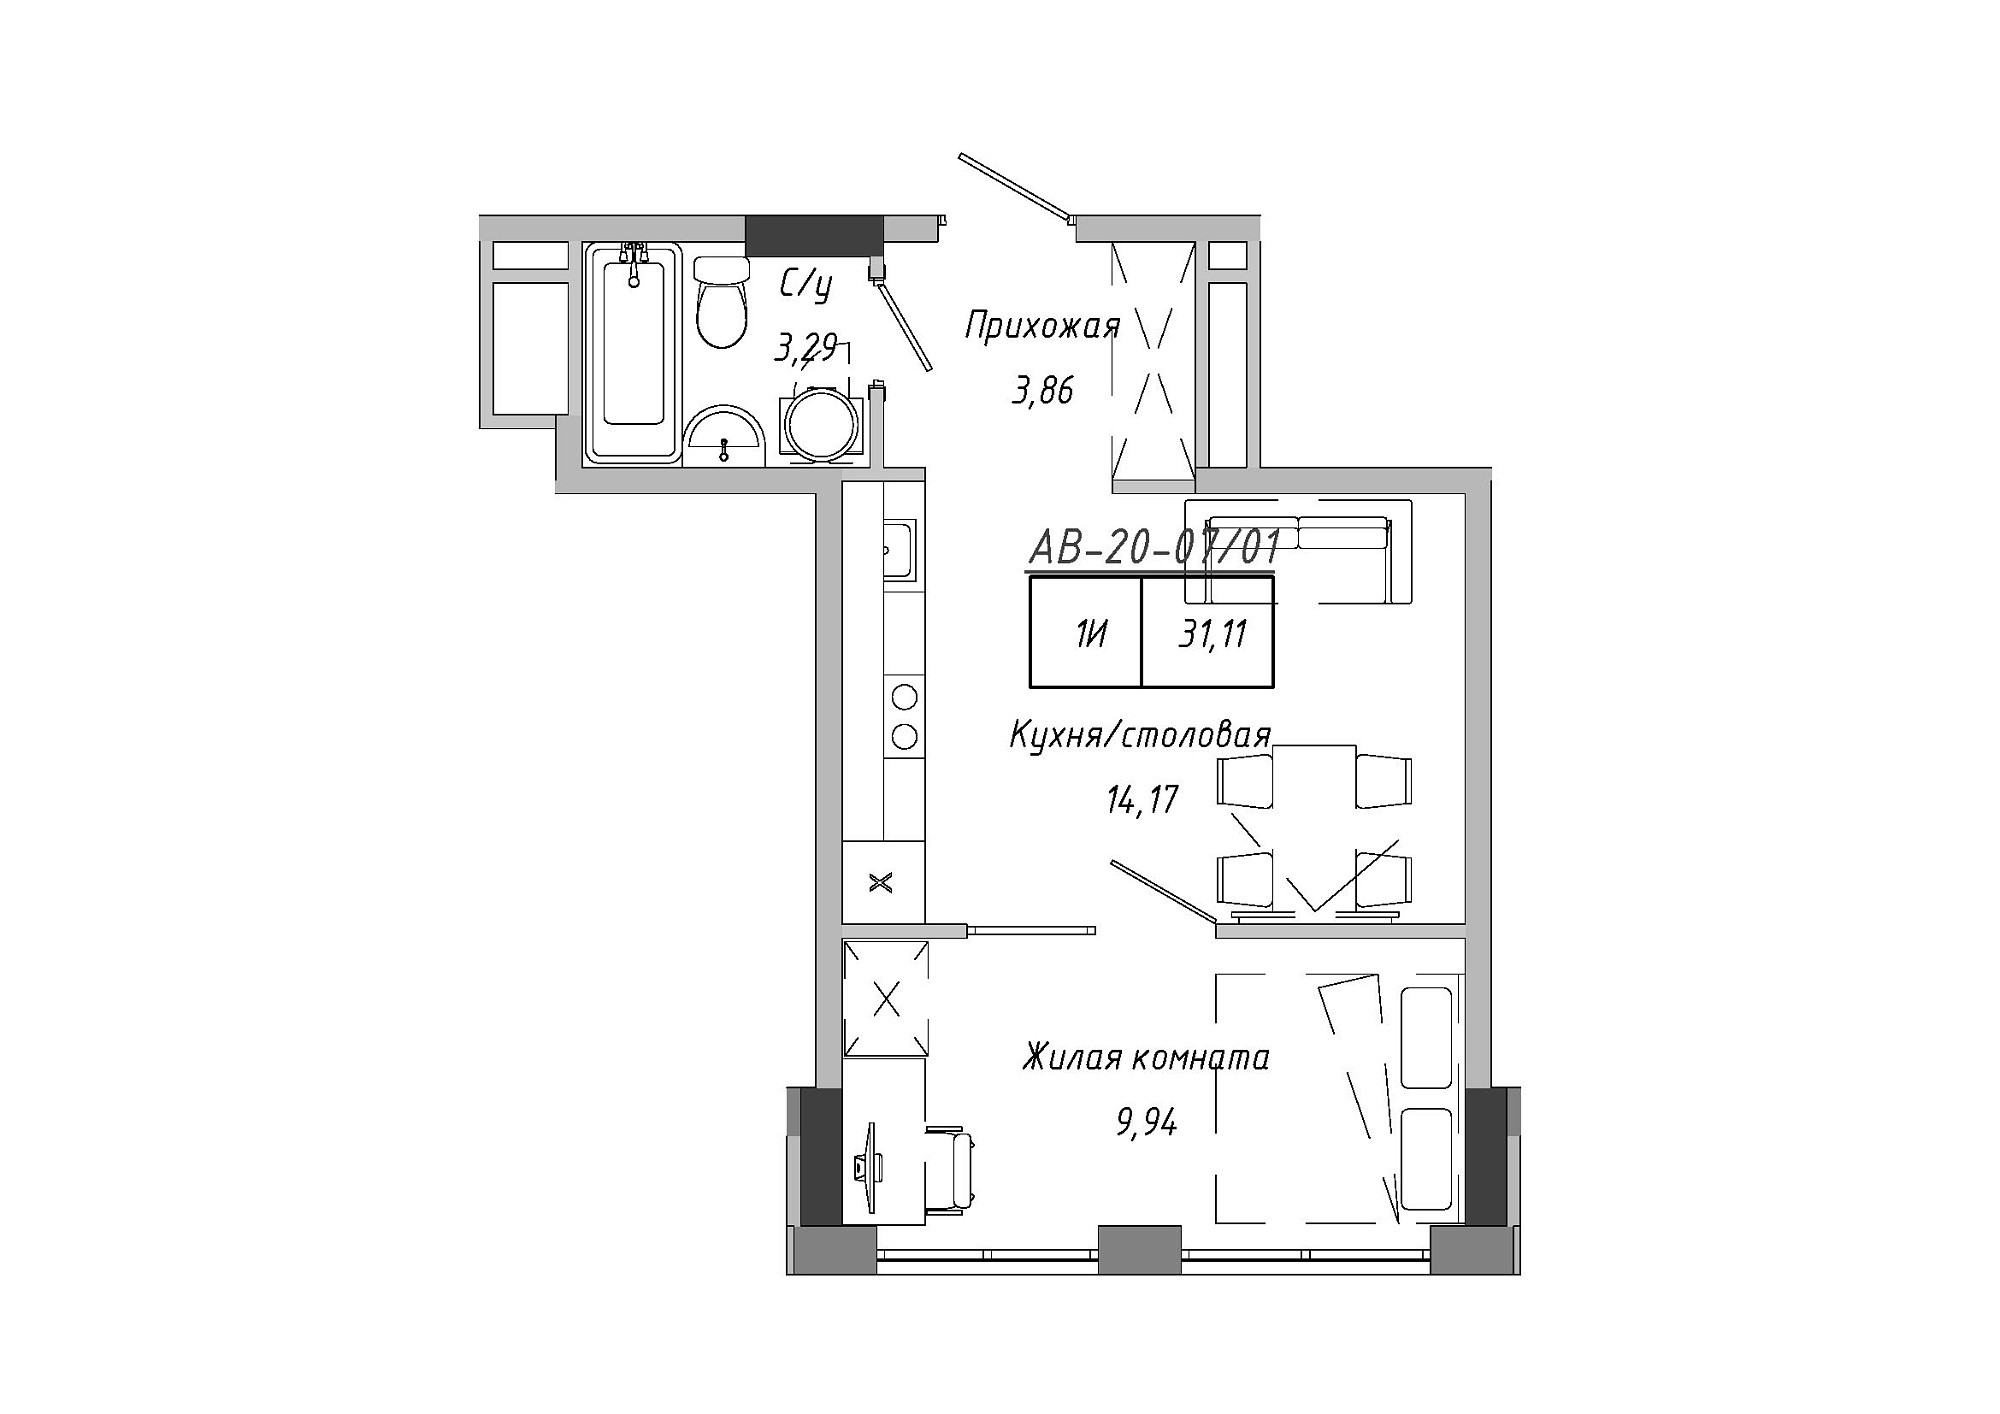 Планування 1-к квартира площею 30.28м2, AB-20-07/00001.